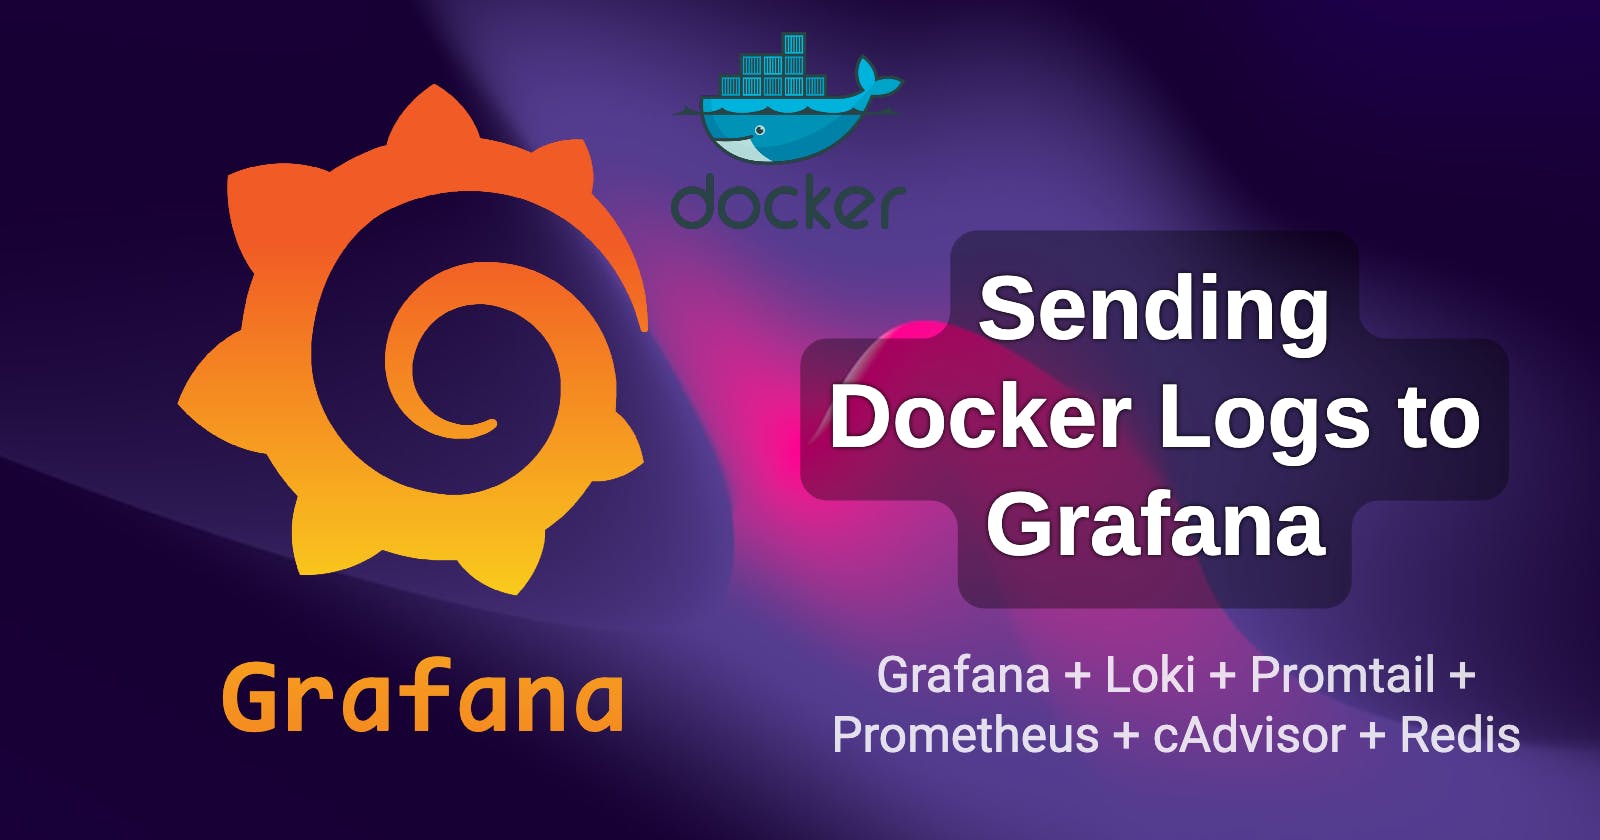 Sending Docker Logs to Grafana